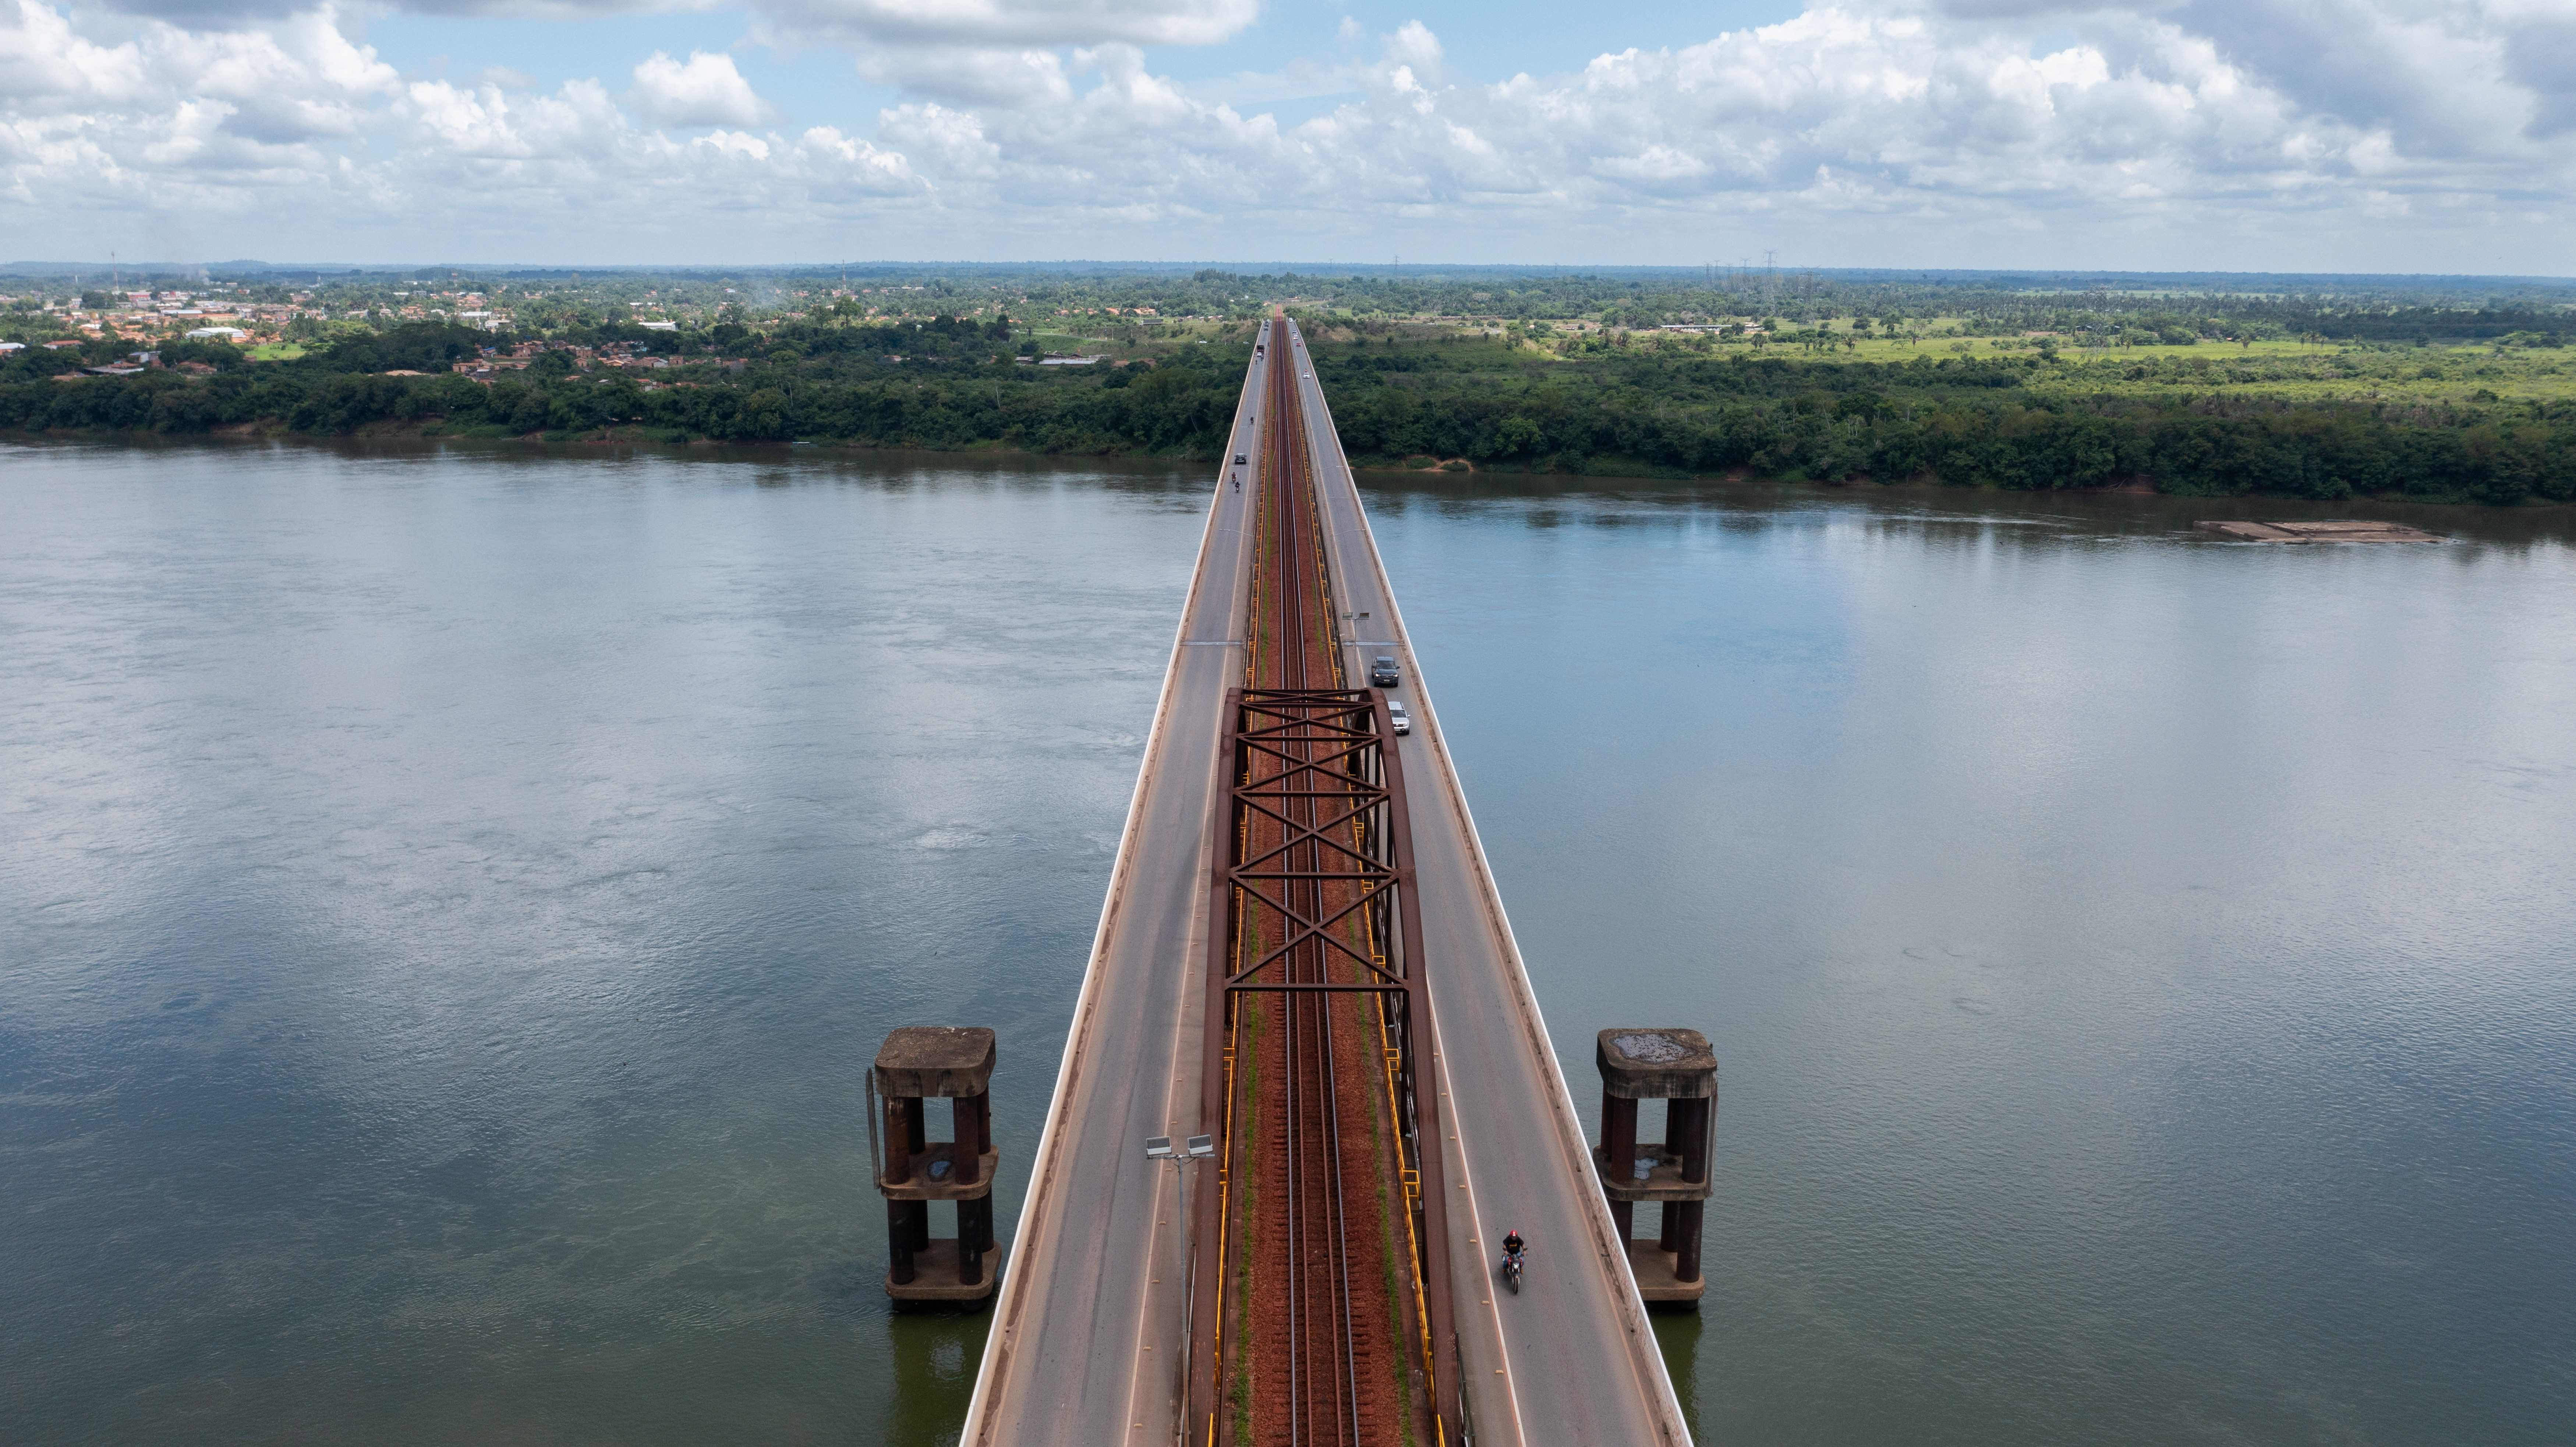 Foto da ponte vista de cima em cima de um rio e uma vegetação ao redor do rio. A ponte possui uma pista para cada sentido e no meio um trilho para trem. 